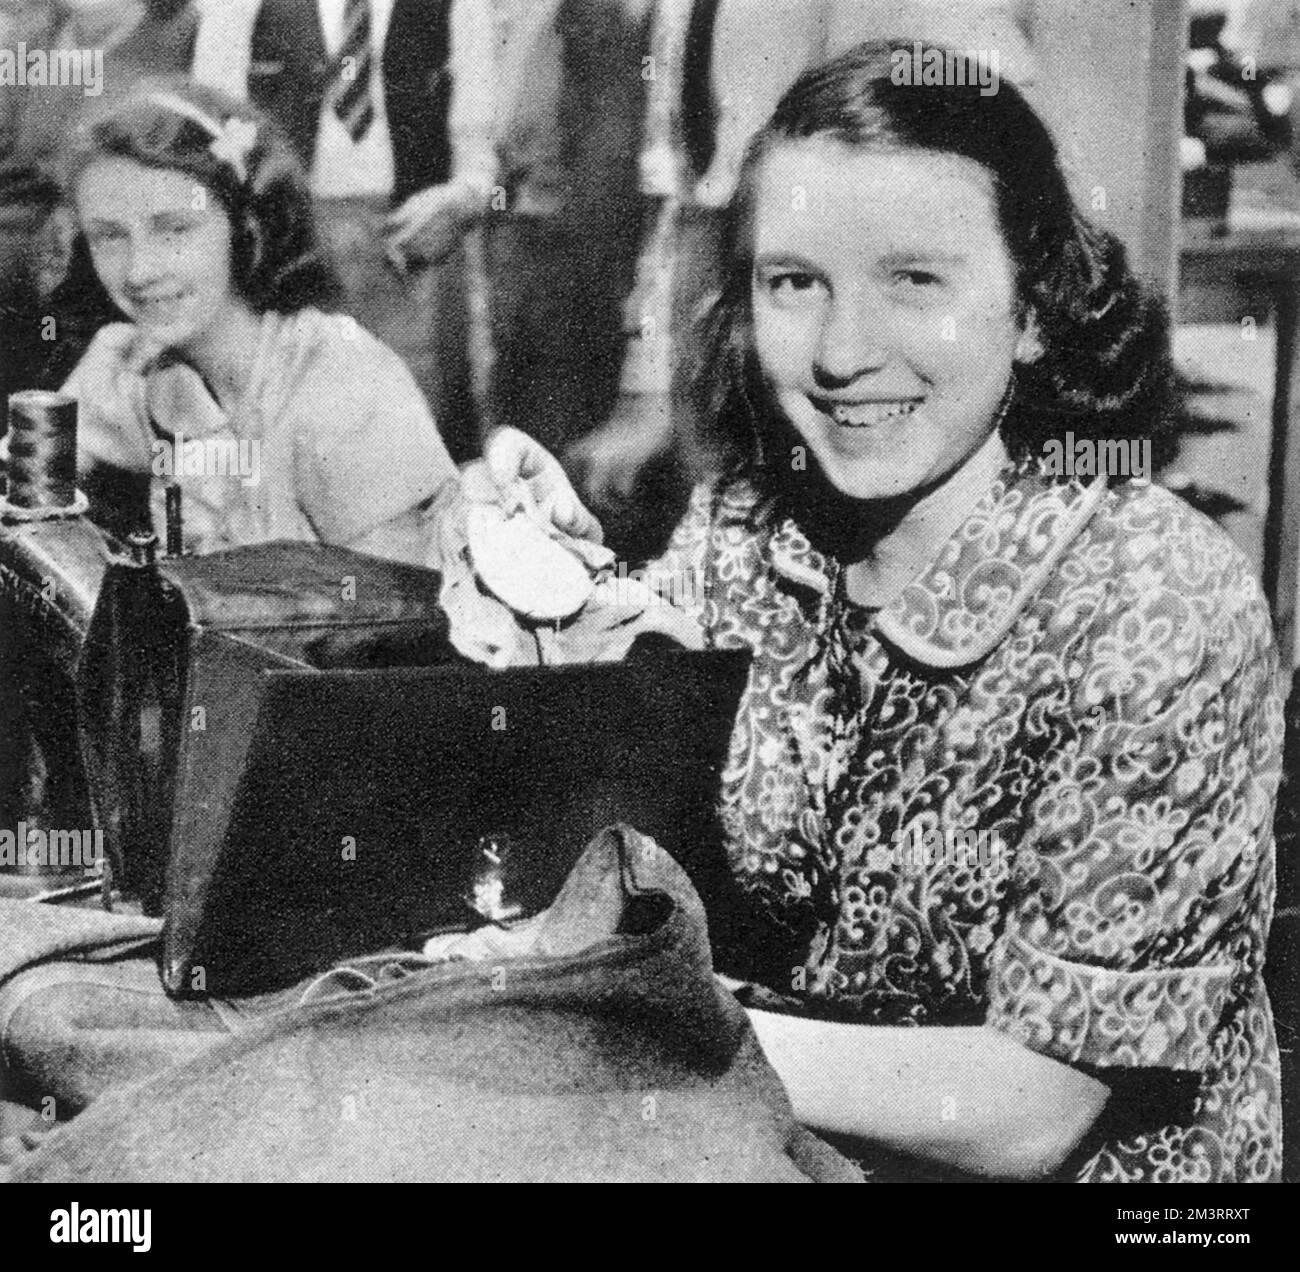 The Sketch hat dieses Bild am 18.. Juni 1941 auf der Seite „Wir nehmen unseren Hut ab...“ gezeigt. "Mabel Knibbs aus Windsor, vierzehnjähriges Mitglied des Windsor Youth Club, war während der Kriegswaffenwoche auf einer Parade, als sie ihre Handtasche fallen ließ, und ein Auto überfuhr sie. Die beiden Prinzessinnen sahen den Vorfall, erzählten es der Königin, woraufhin Ihre Majestät dem Kind eine neue marineblaue Handtasche schickte, um die verlorene zu ersetzen." Datum: 1941 Stockfoto